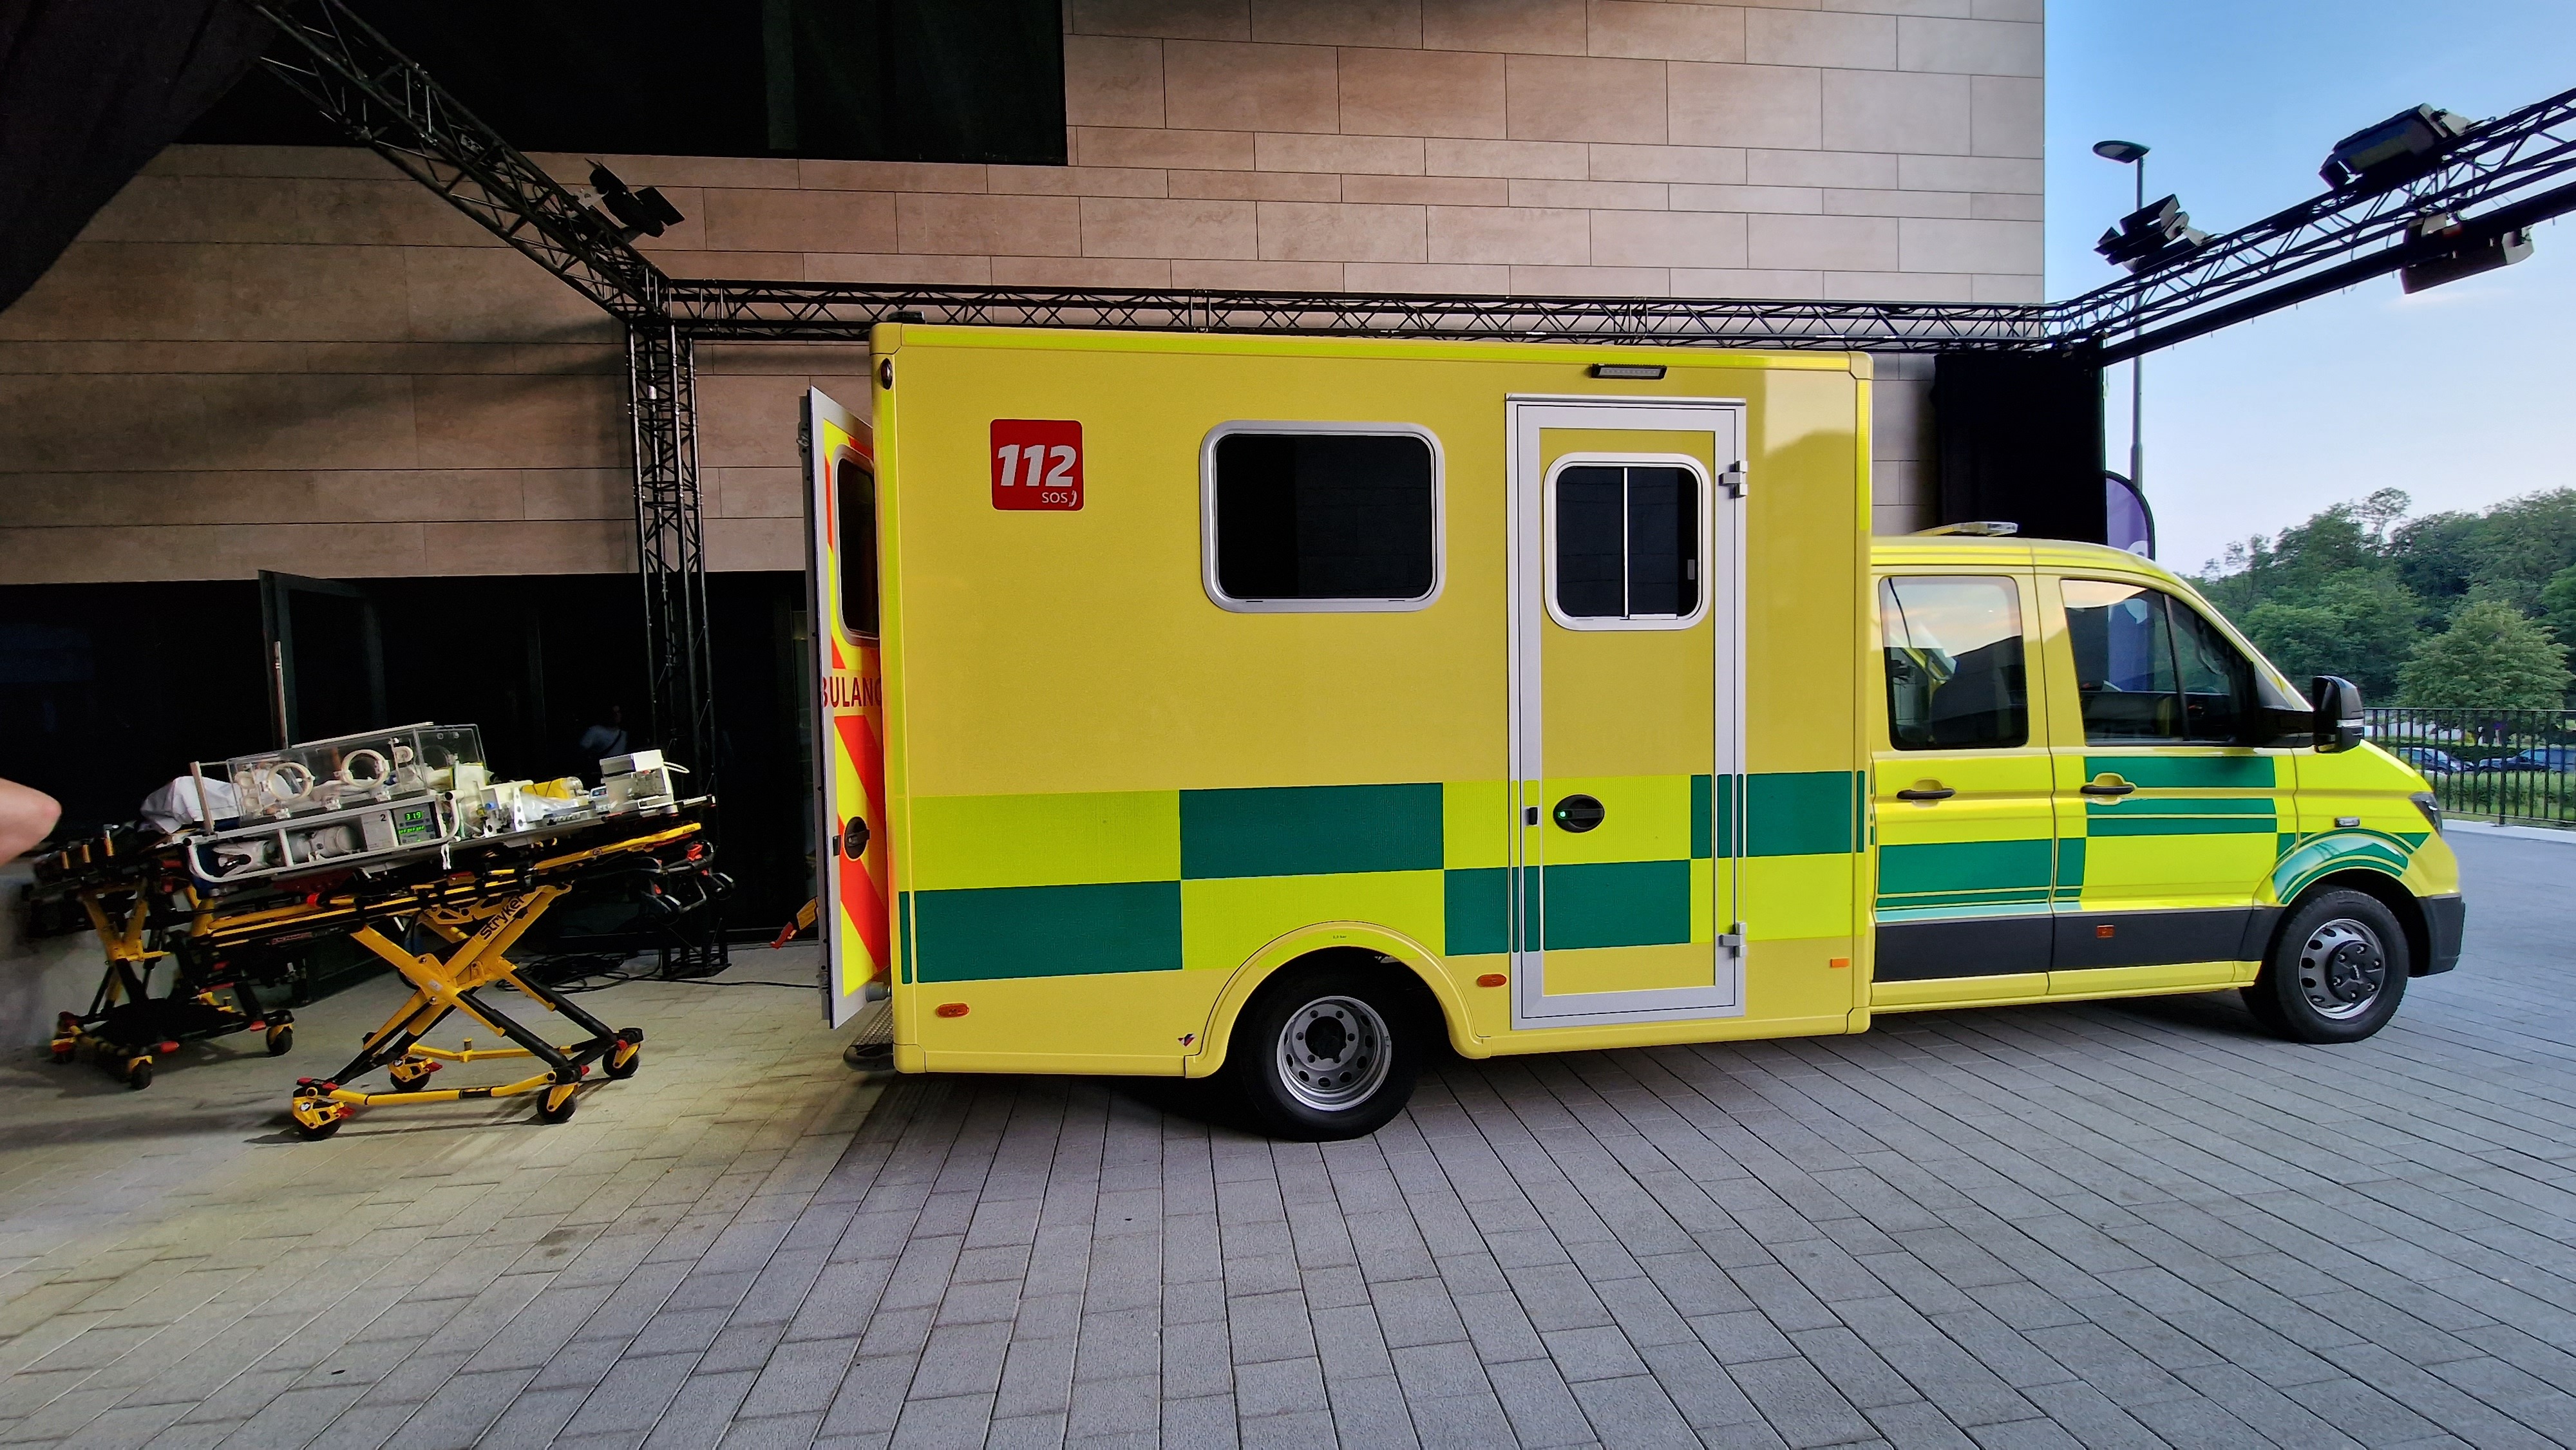 Nouvelle ambulance haute technologie pour l’UZ Brussel  6cbw